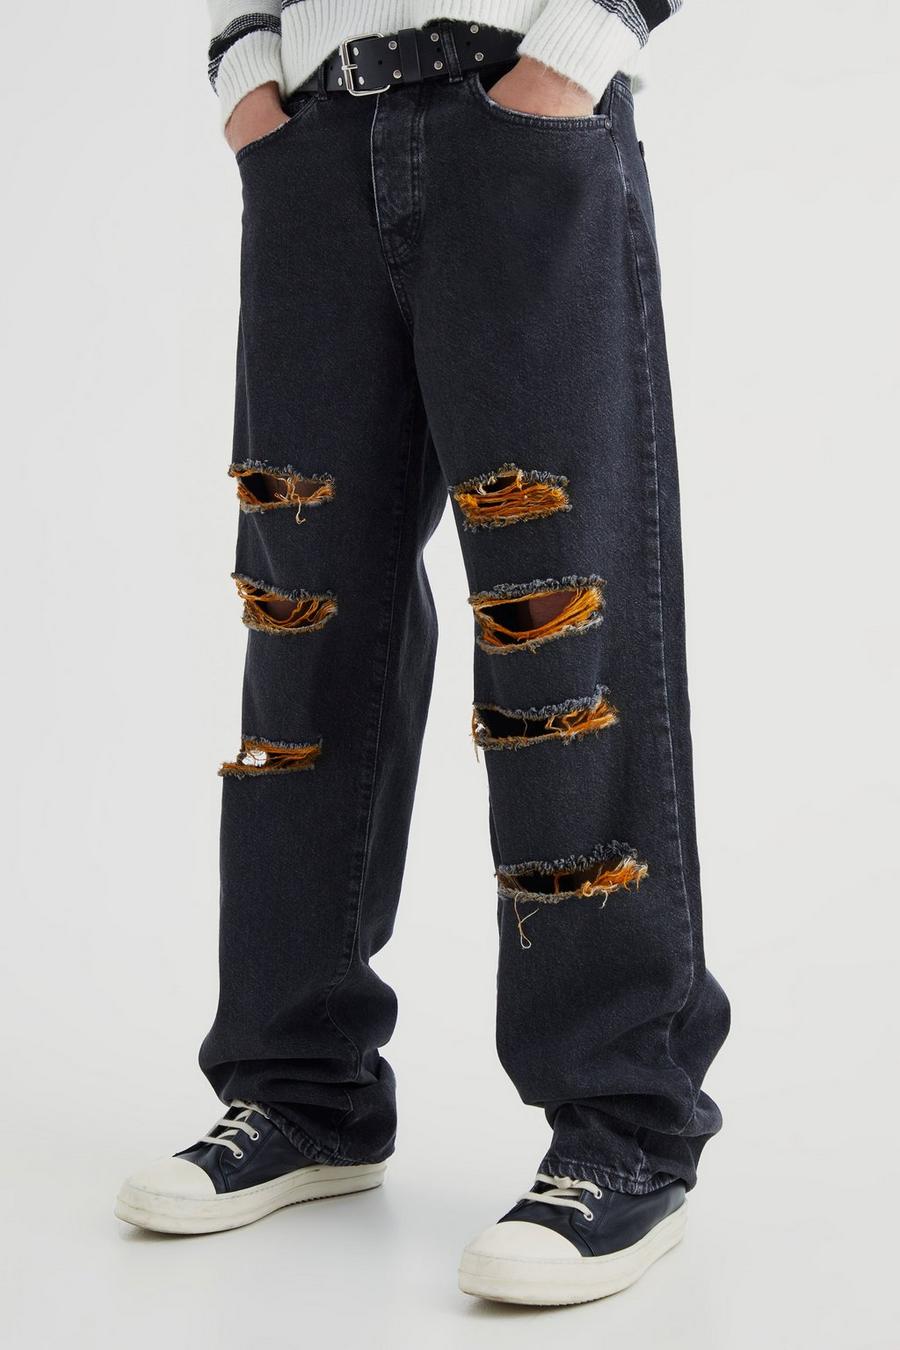 Lockere zerrissene Kontrast-Jeans, Washed black